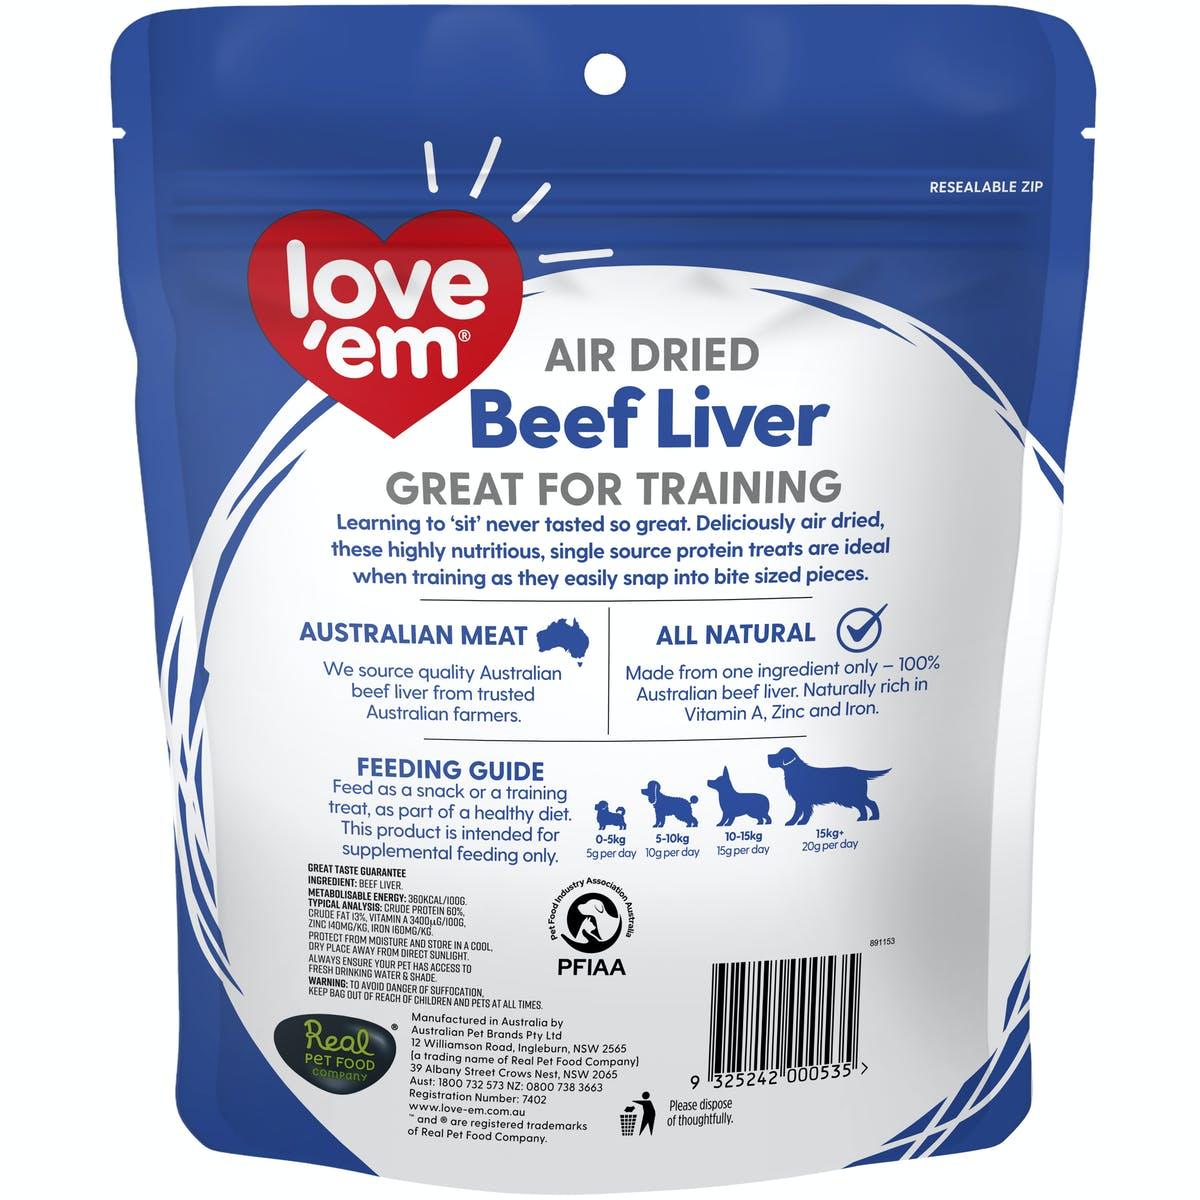 LOVE EM - Air Dried Beef Liver - DE Pet